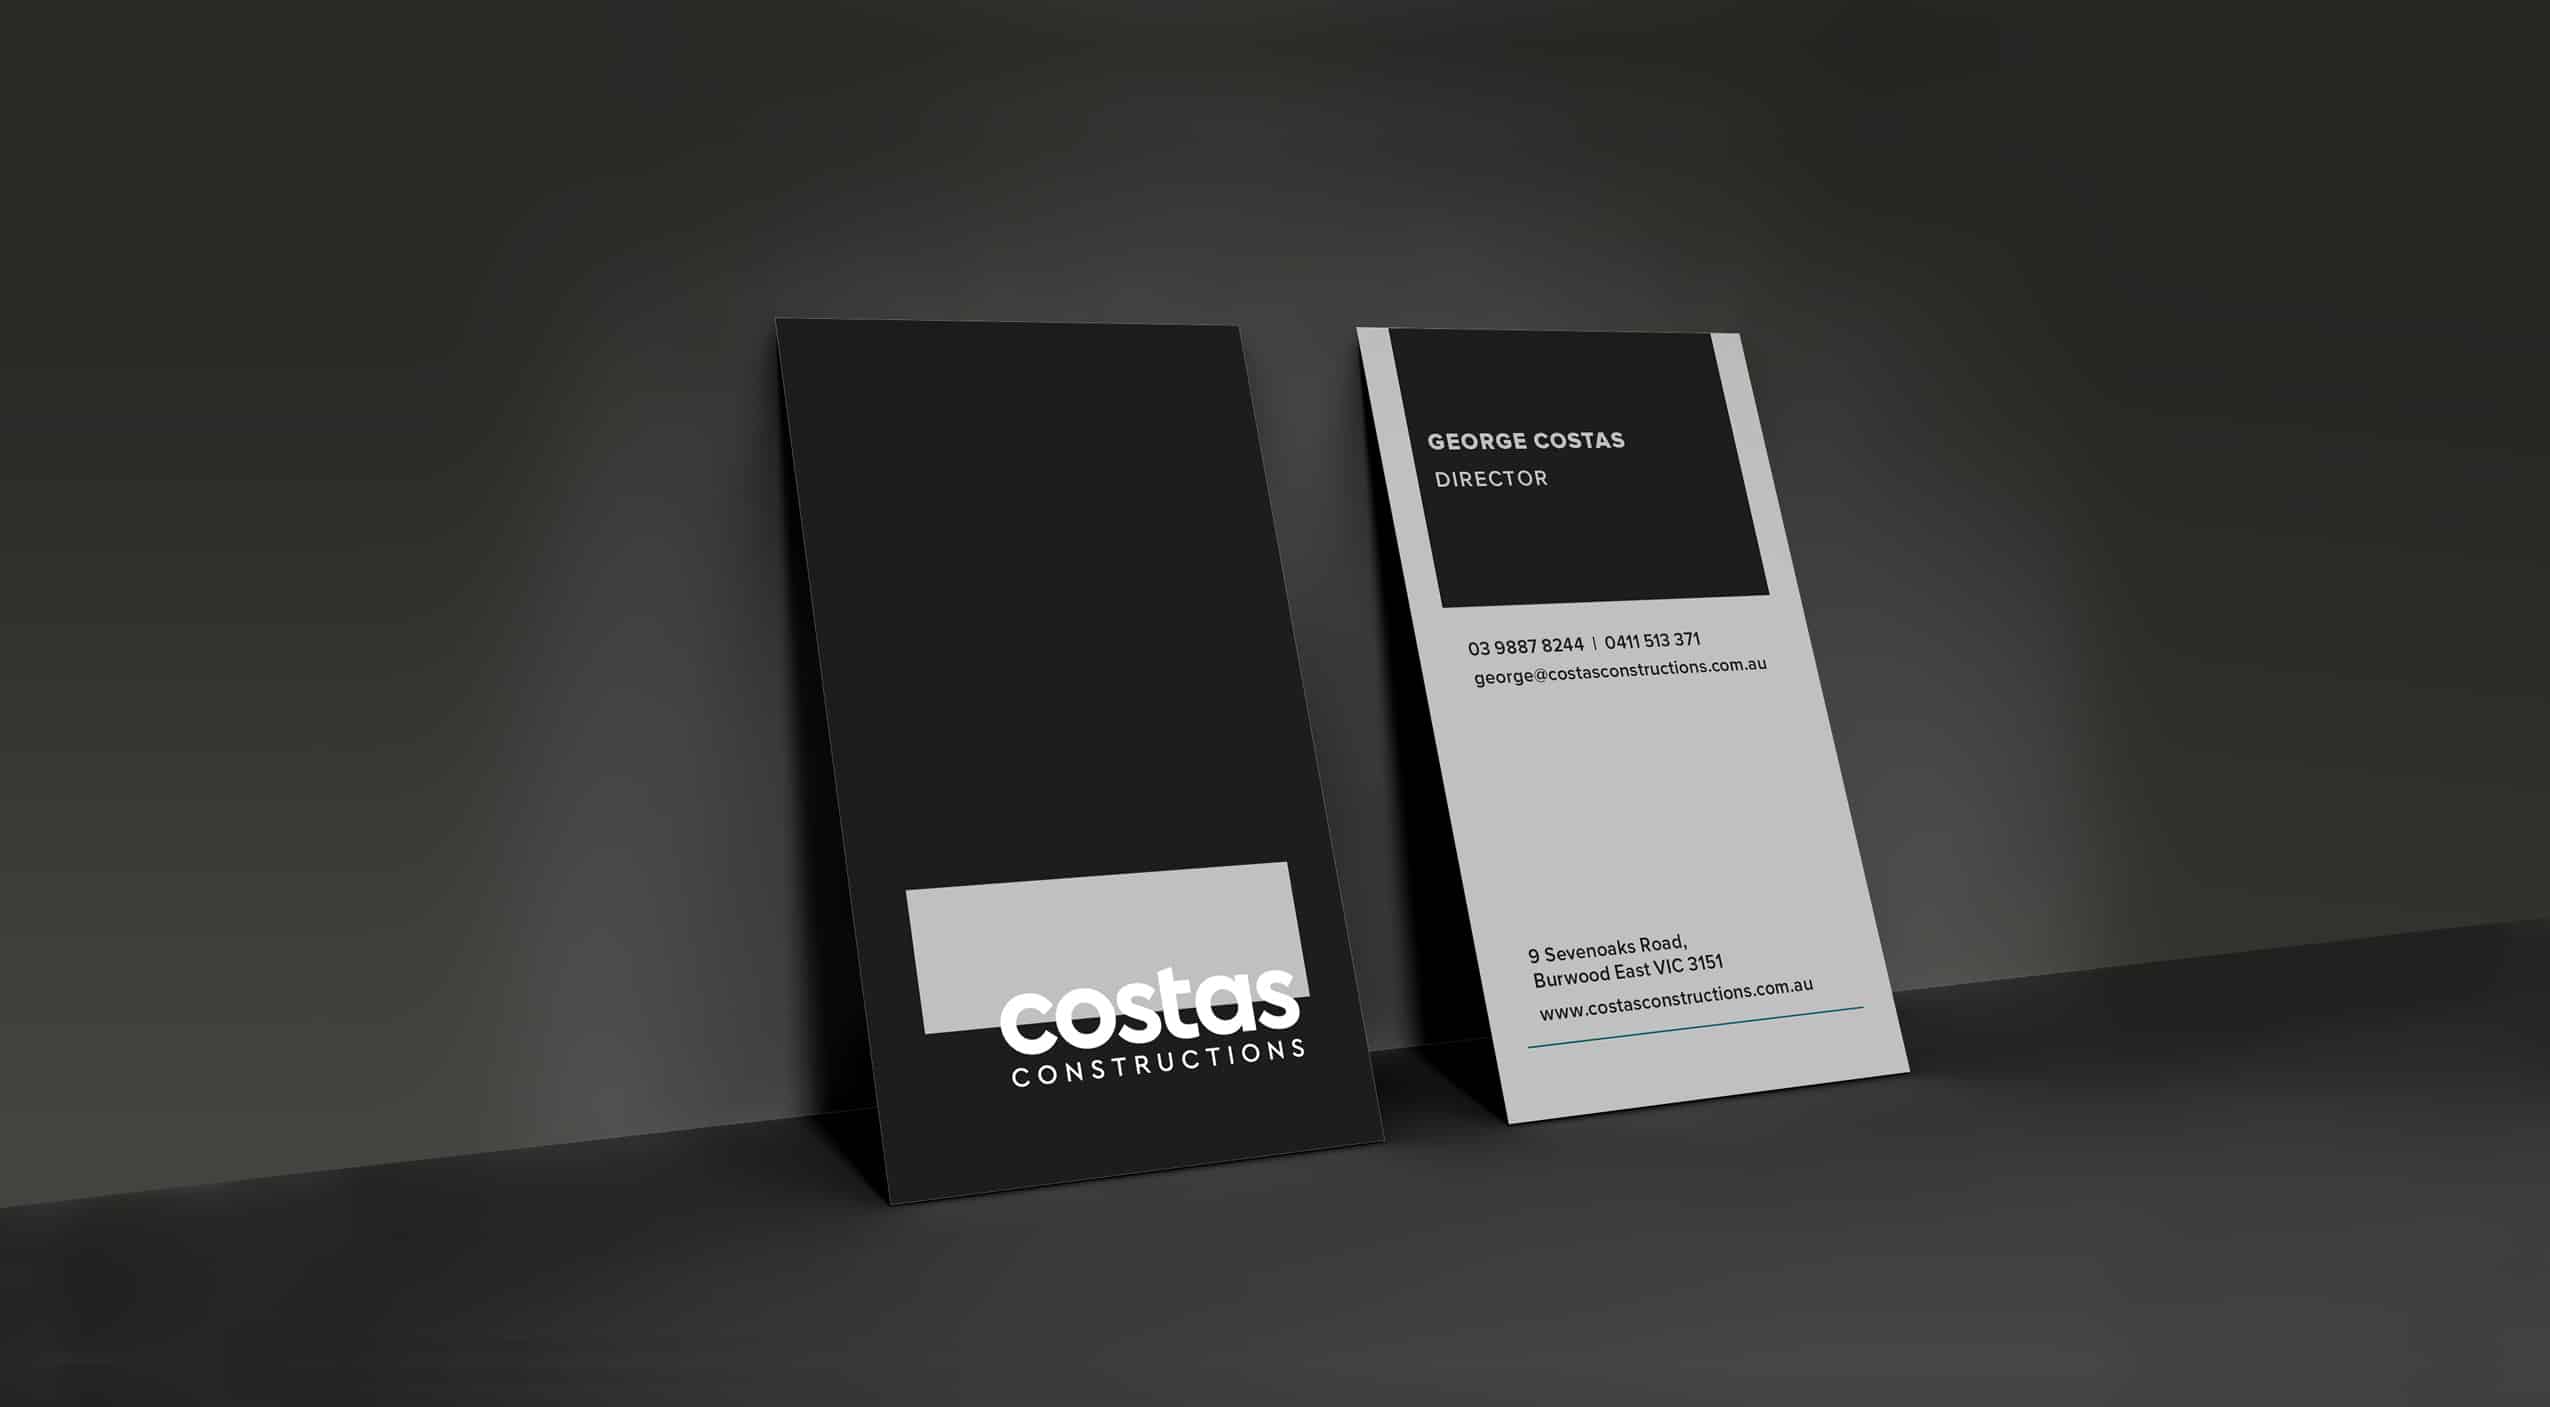 Costas Constructions - Branding and Website Design